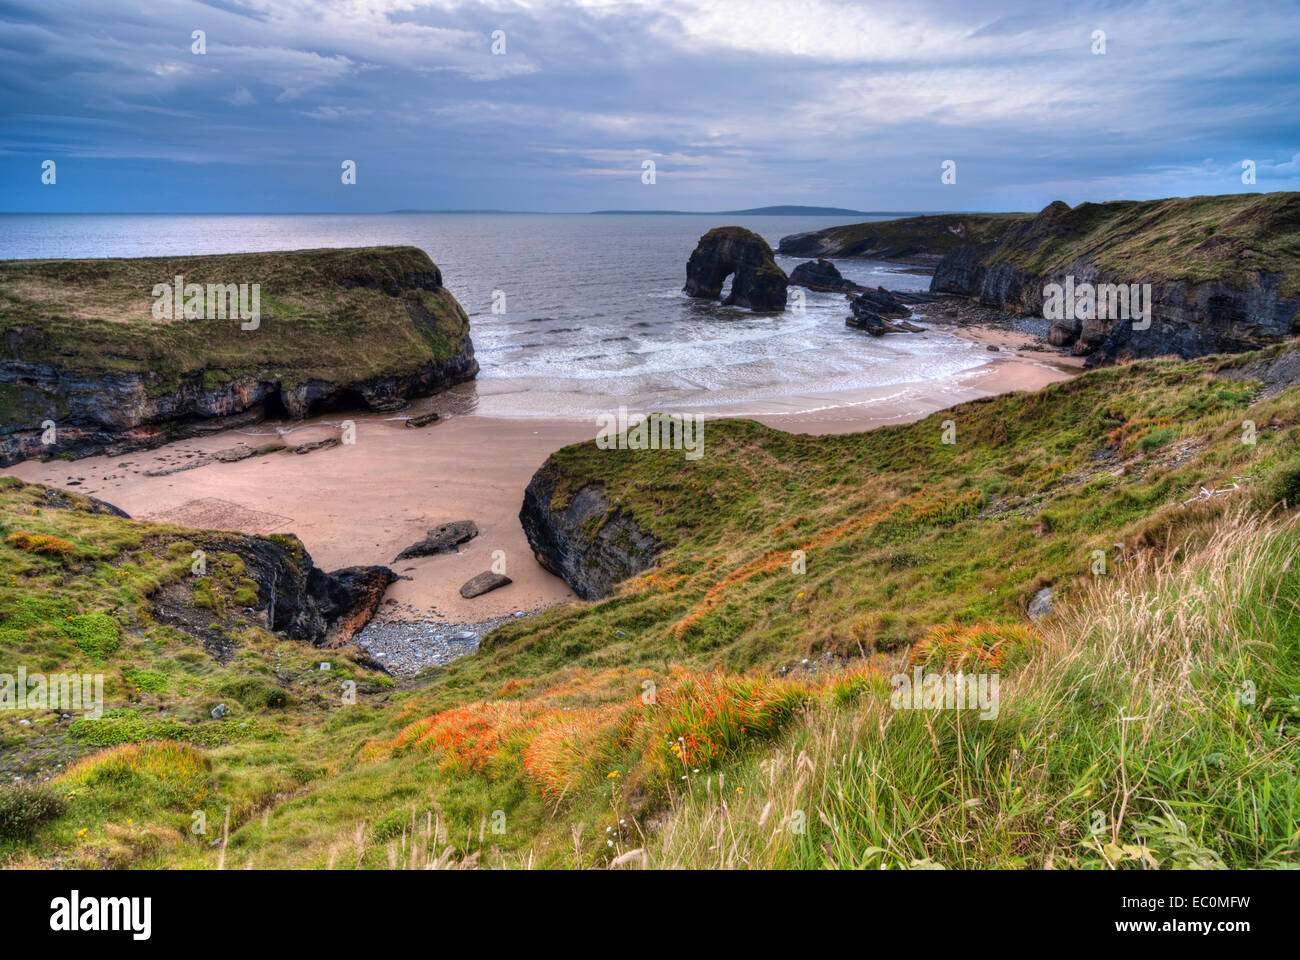 Cliff over Atlantic Ocean at Irish coastline Stock Photo